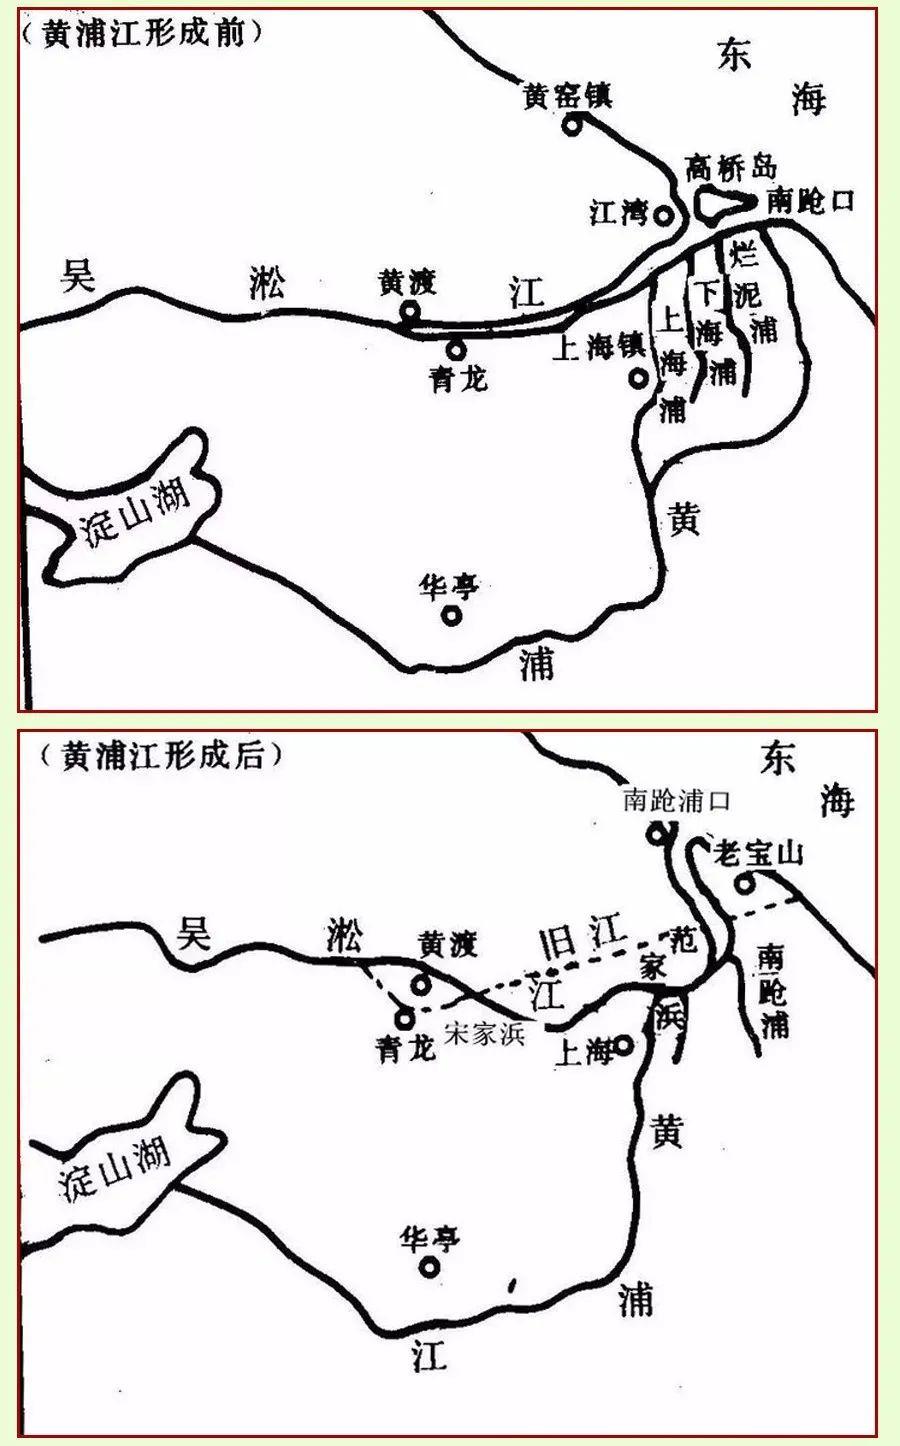 上海河流分布图高清图片